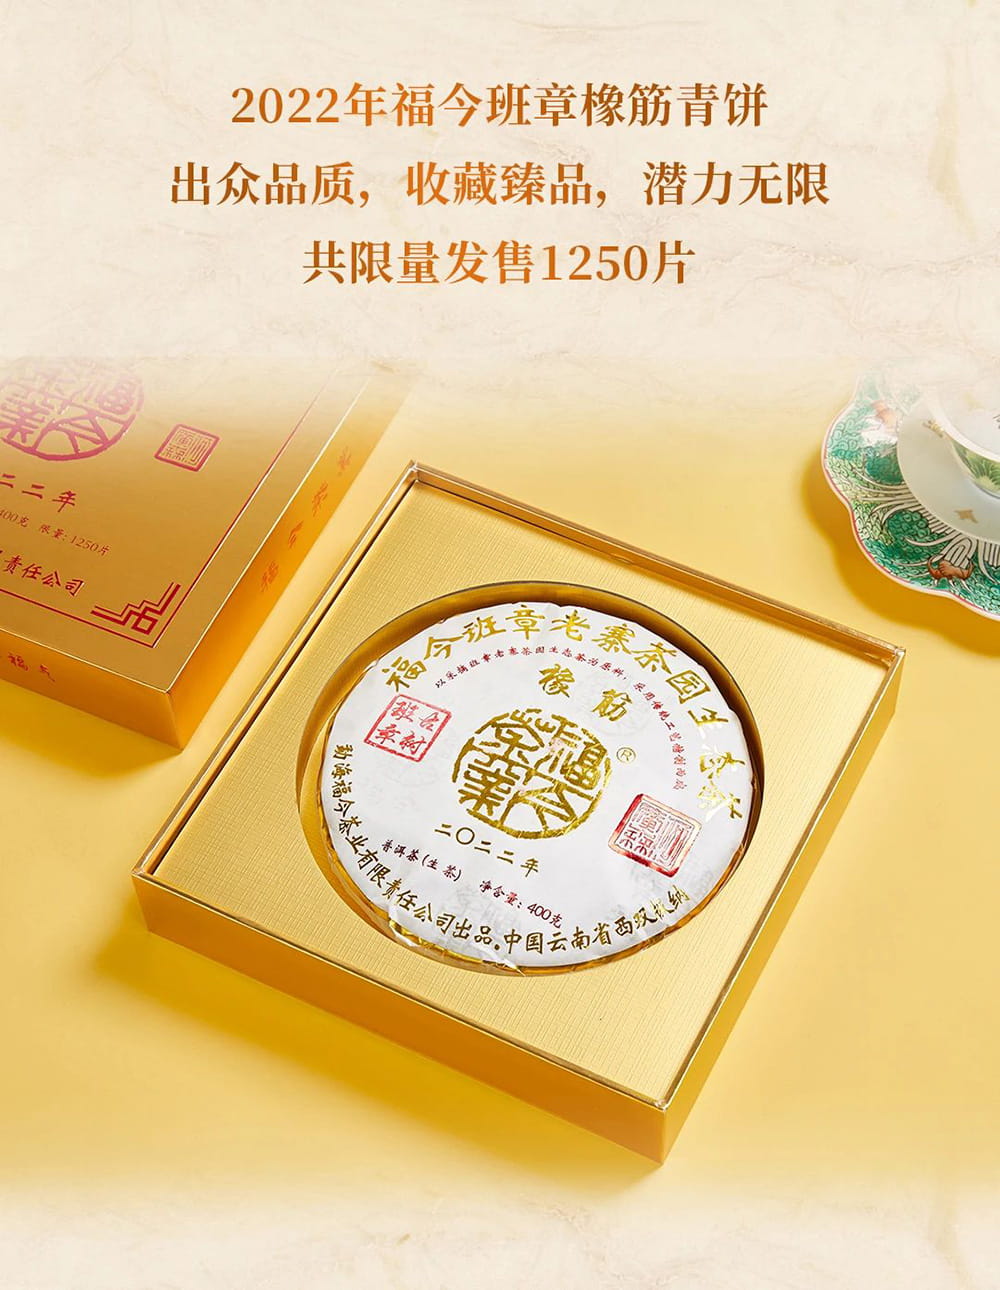 重磅臻品丨2022年福今班章橡筋青饼正式发售！